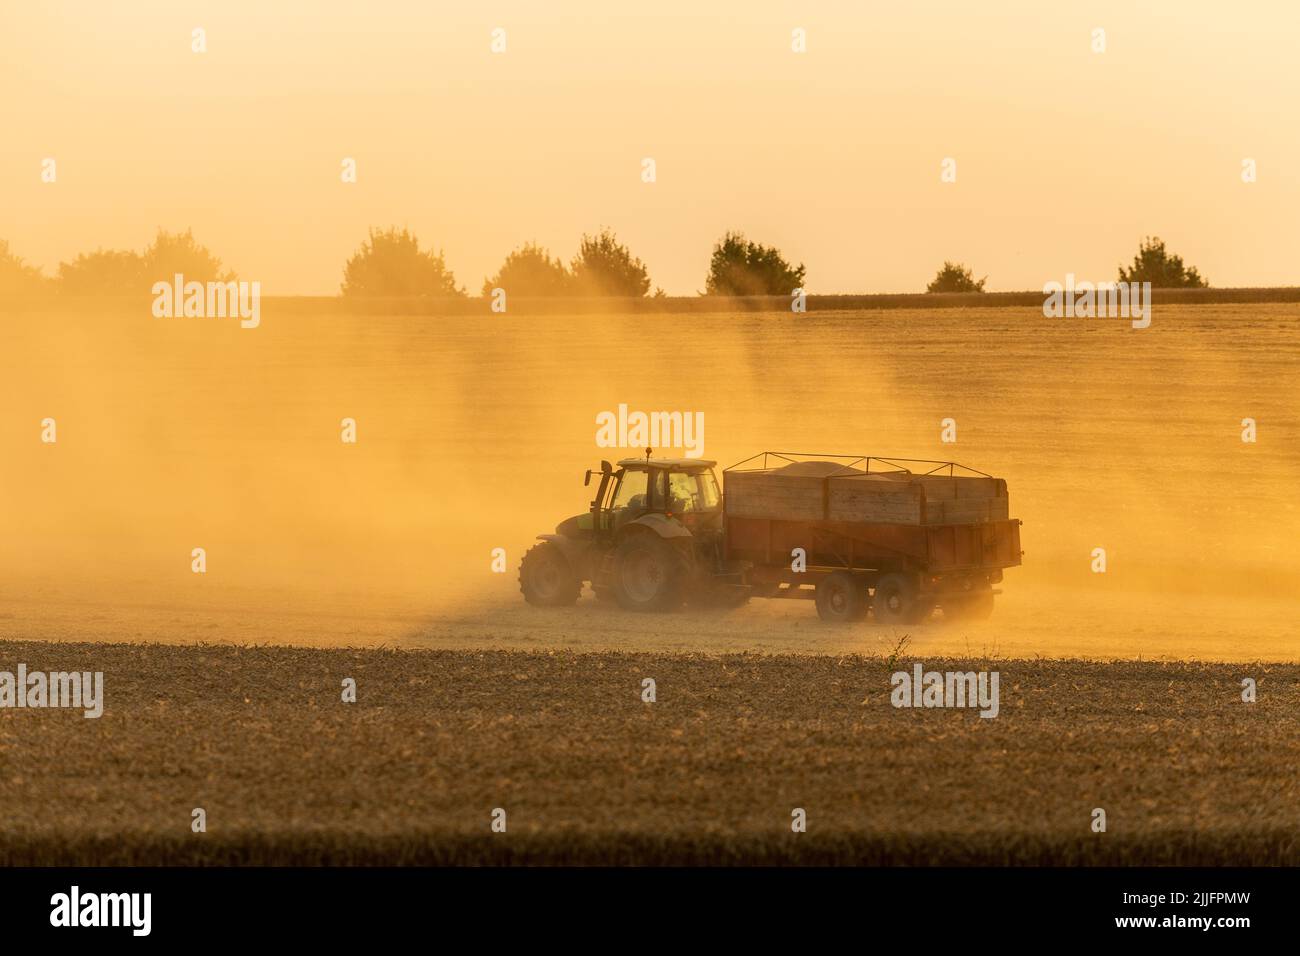 Récolte de blé en cours, tracteur avec remorque pour le chargement. Réglage du soleil éclairant la poussière soulevée. Banque D'Images